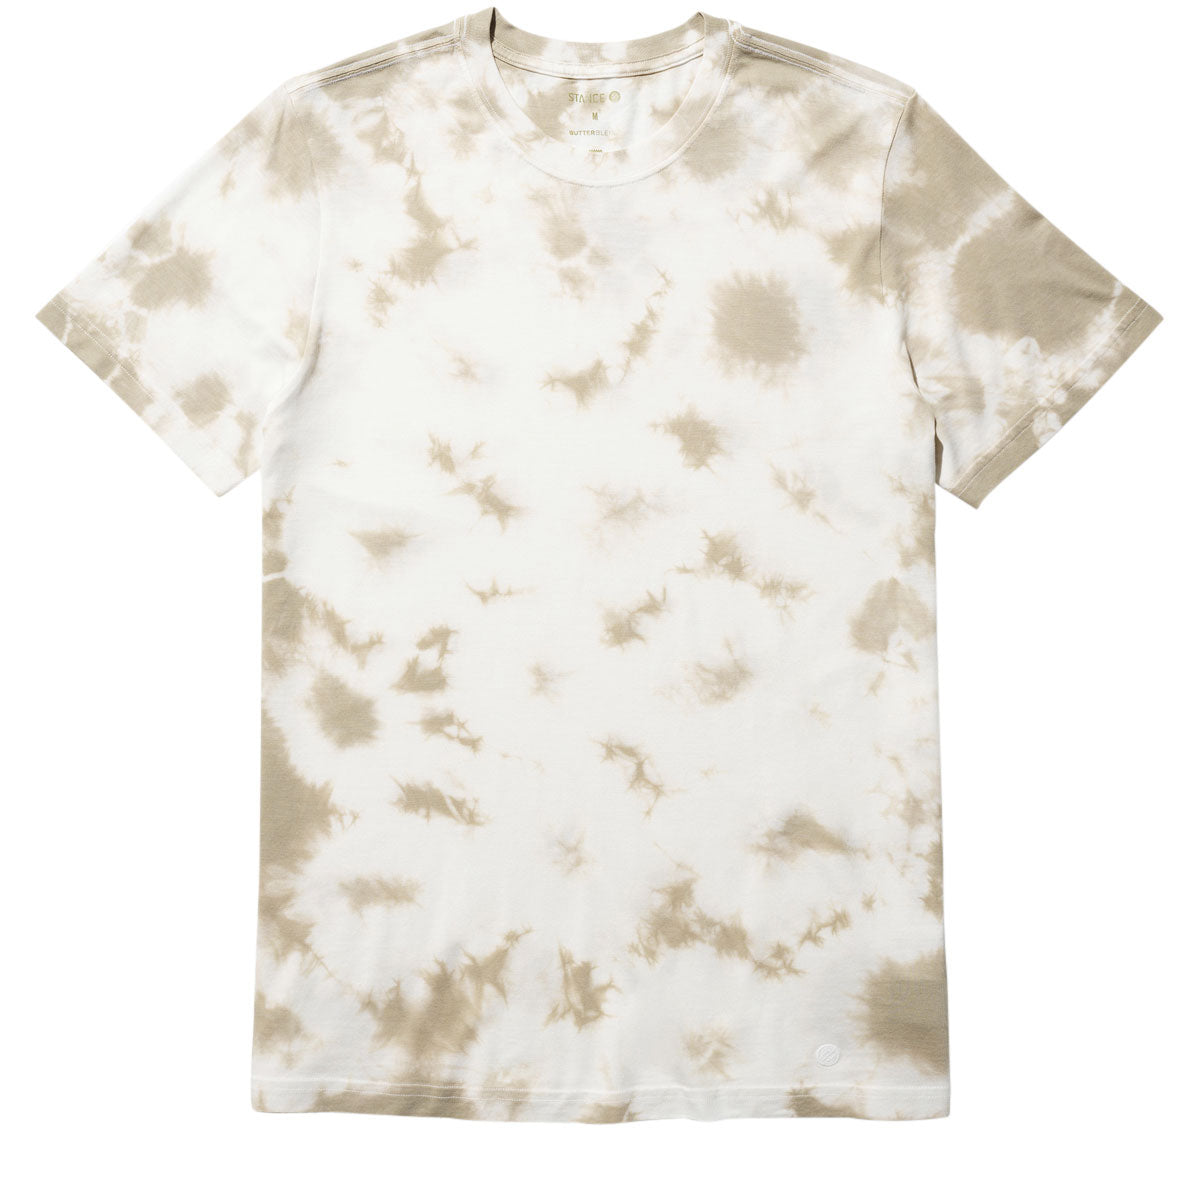 Stance Butter Blend T-Shirt - Canvas Dye image 1